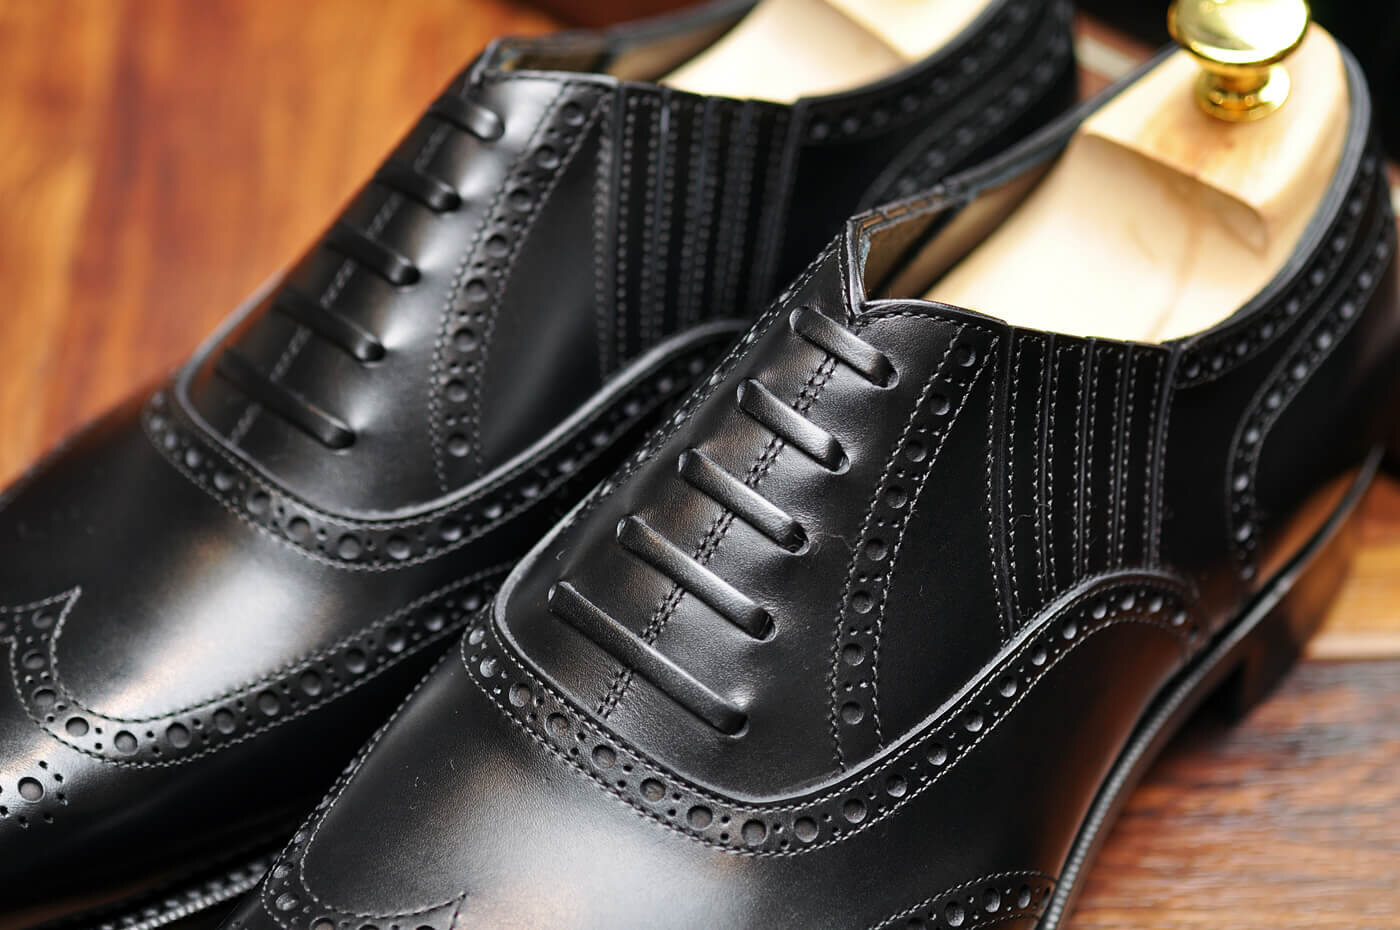 レイジーマンの革靴はビジネスにもおすすめ。オーダーシューズならではの特徴や魅力をご紹介